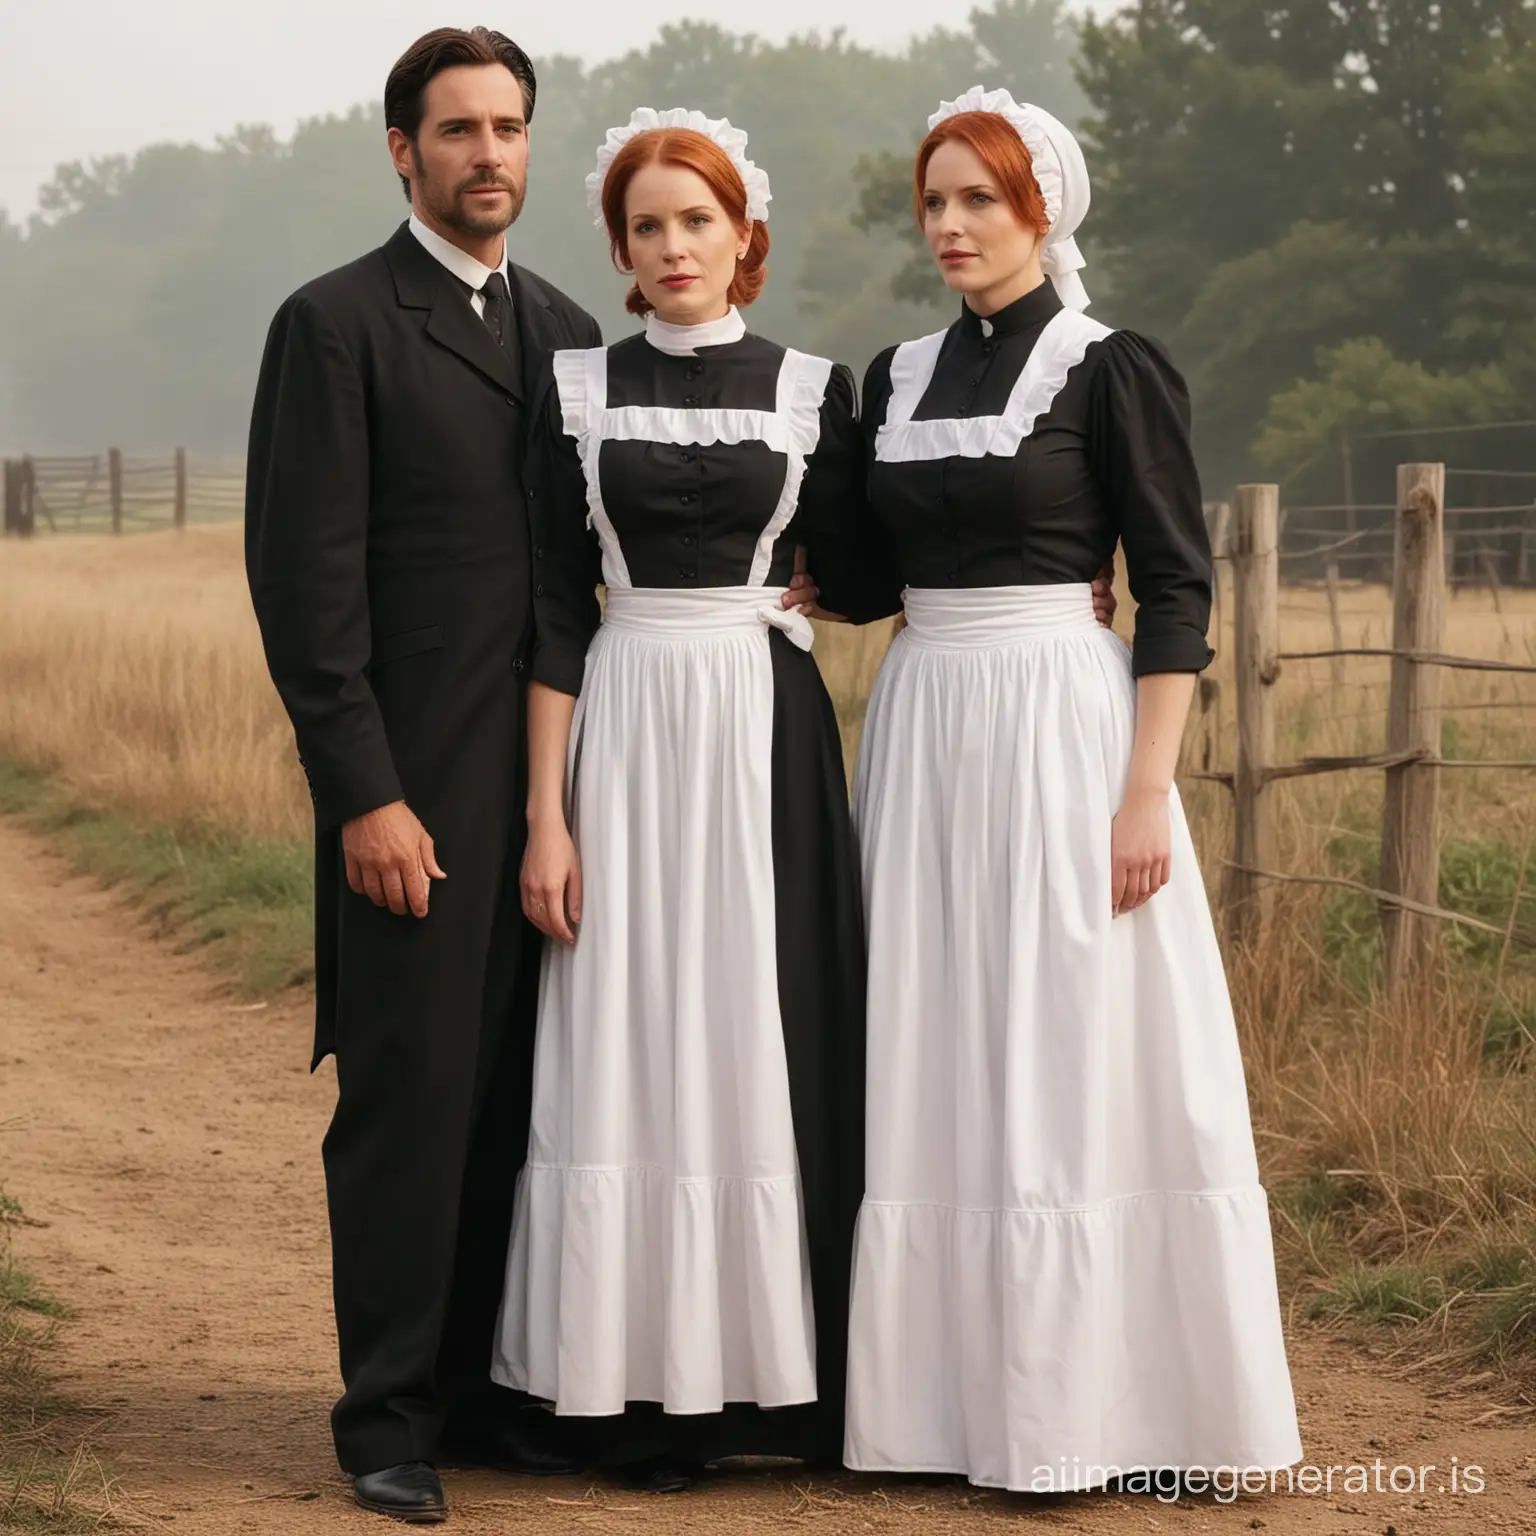 Amish-Preacher-and-Dana-Scully-in-Traditional-Attire